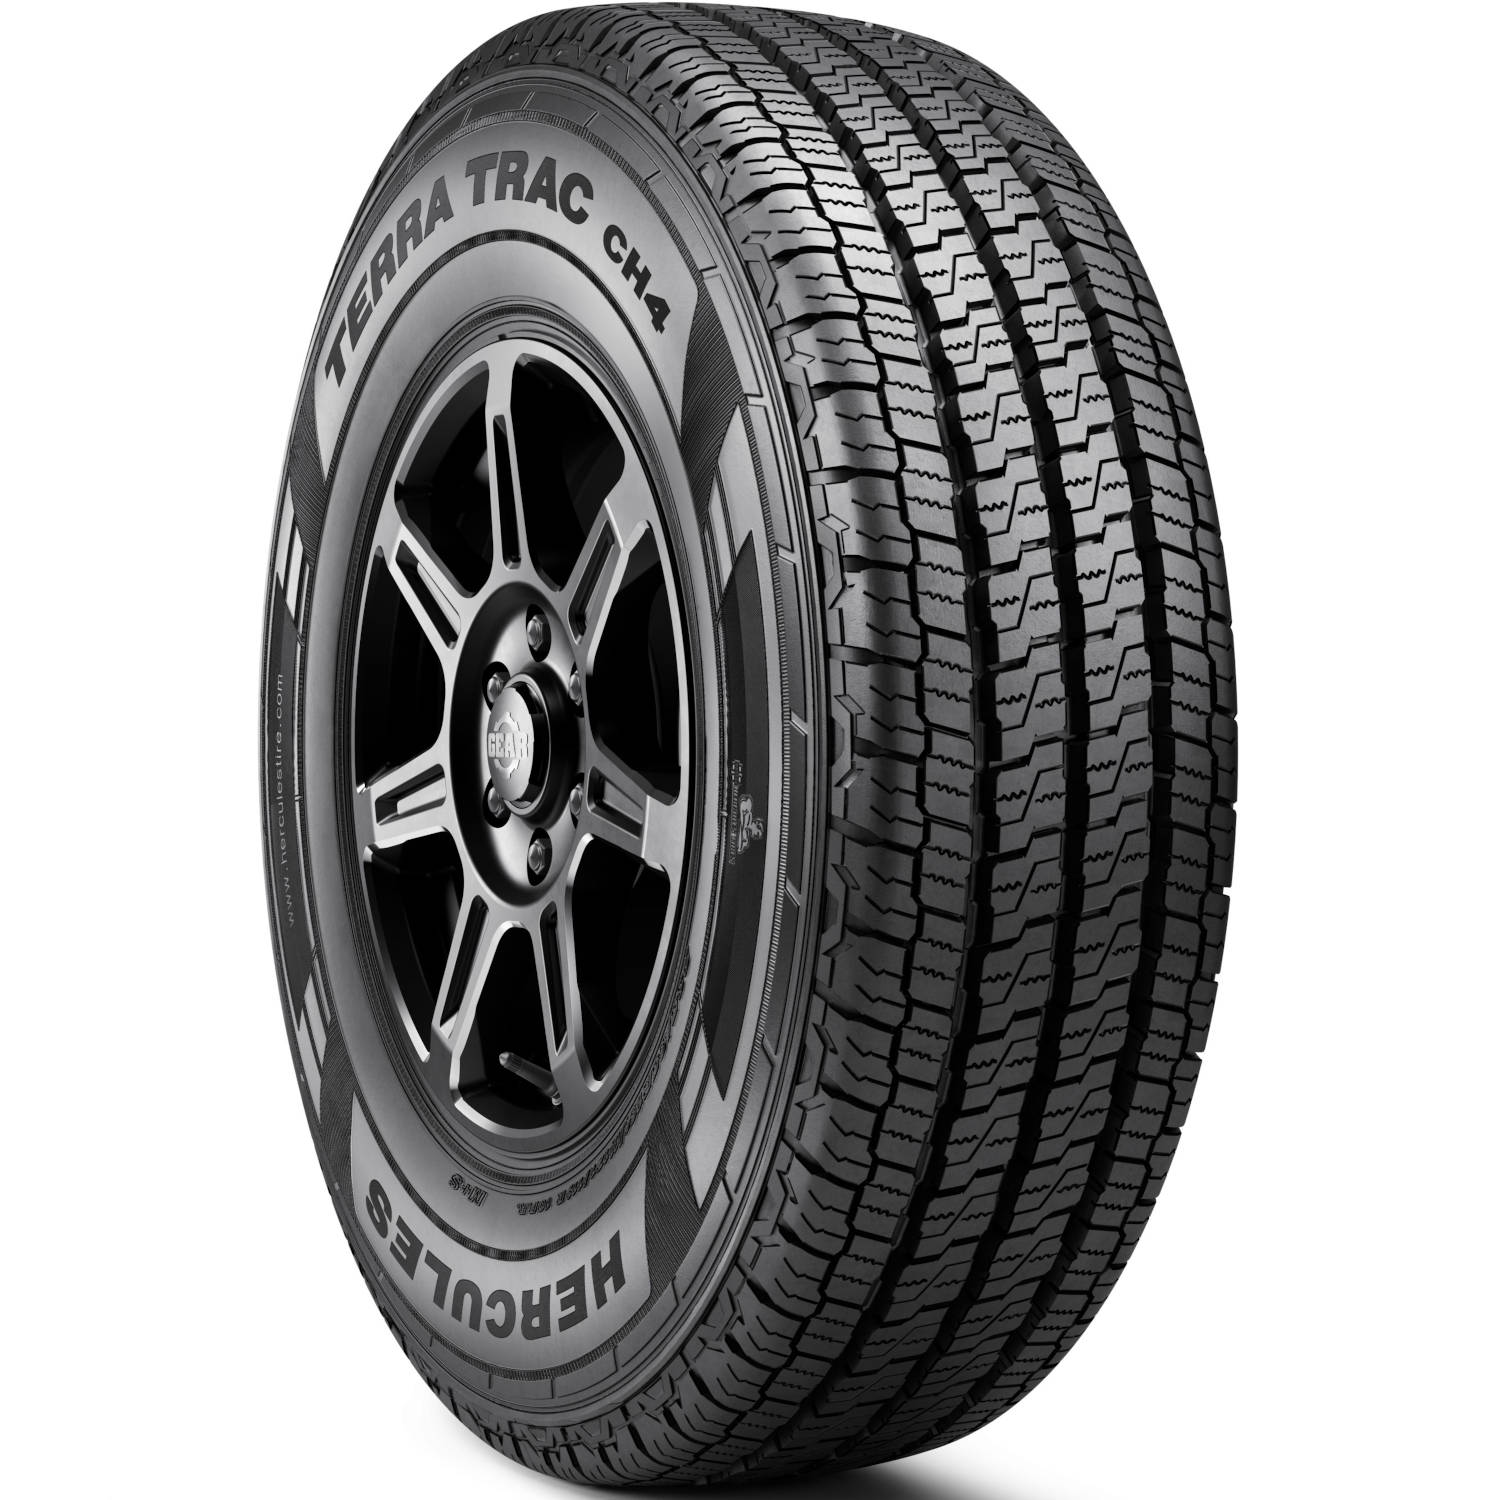 HERCULES TERRA TRAC CH4 LT245/75R16 (30.4X9.7R 16) Tires